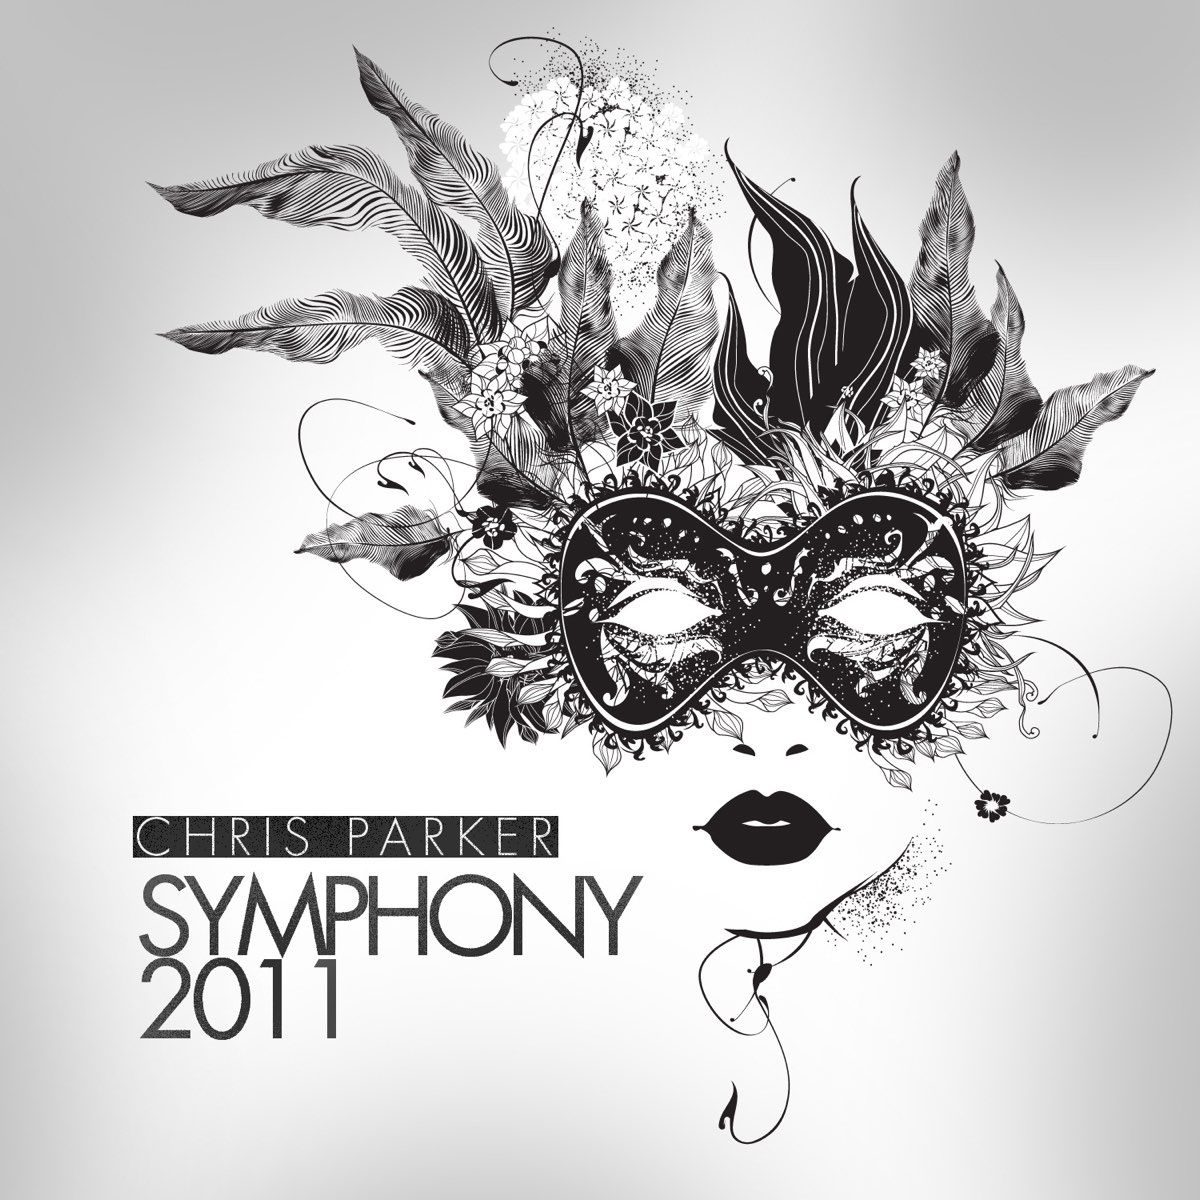 Symphony 2011 - Single by Chris Parker.